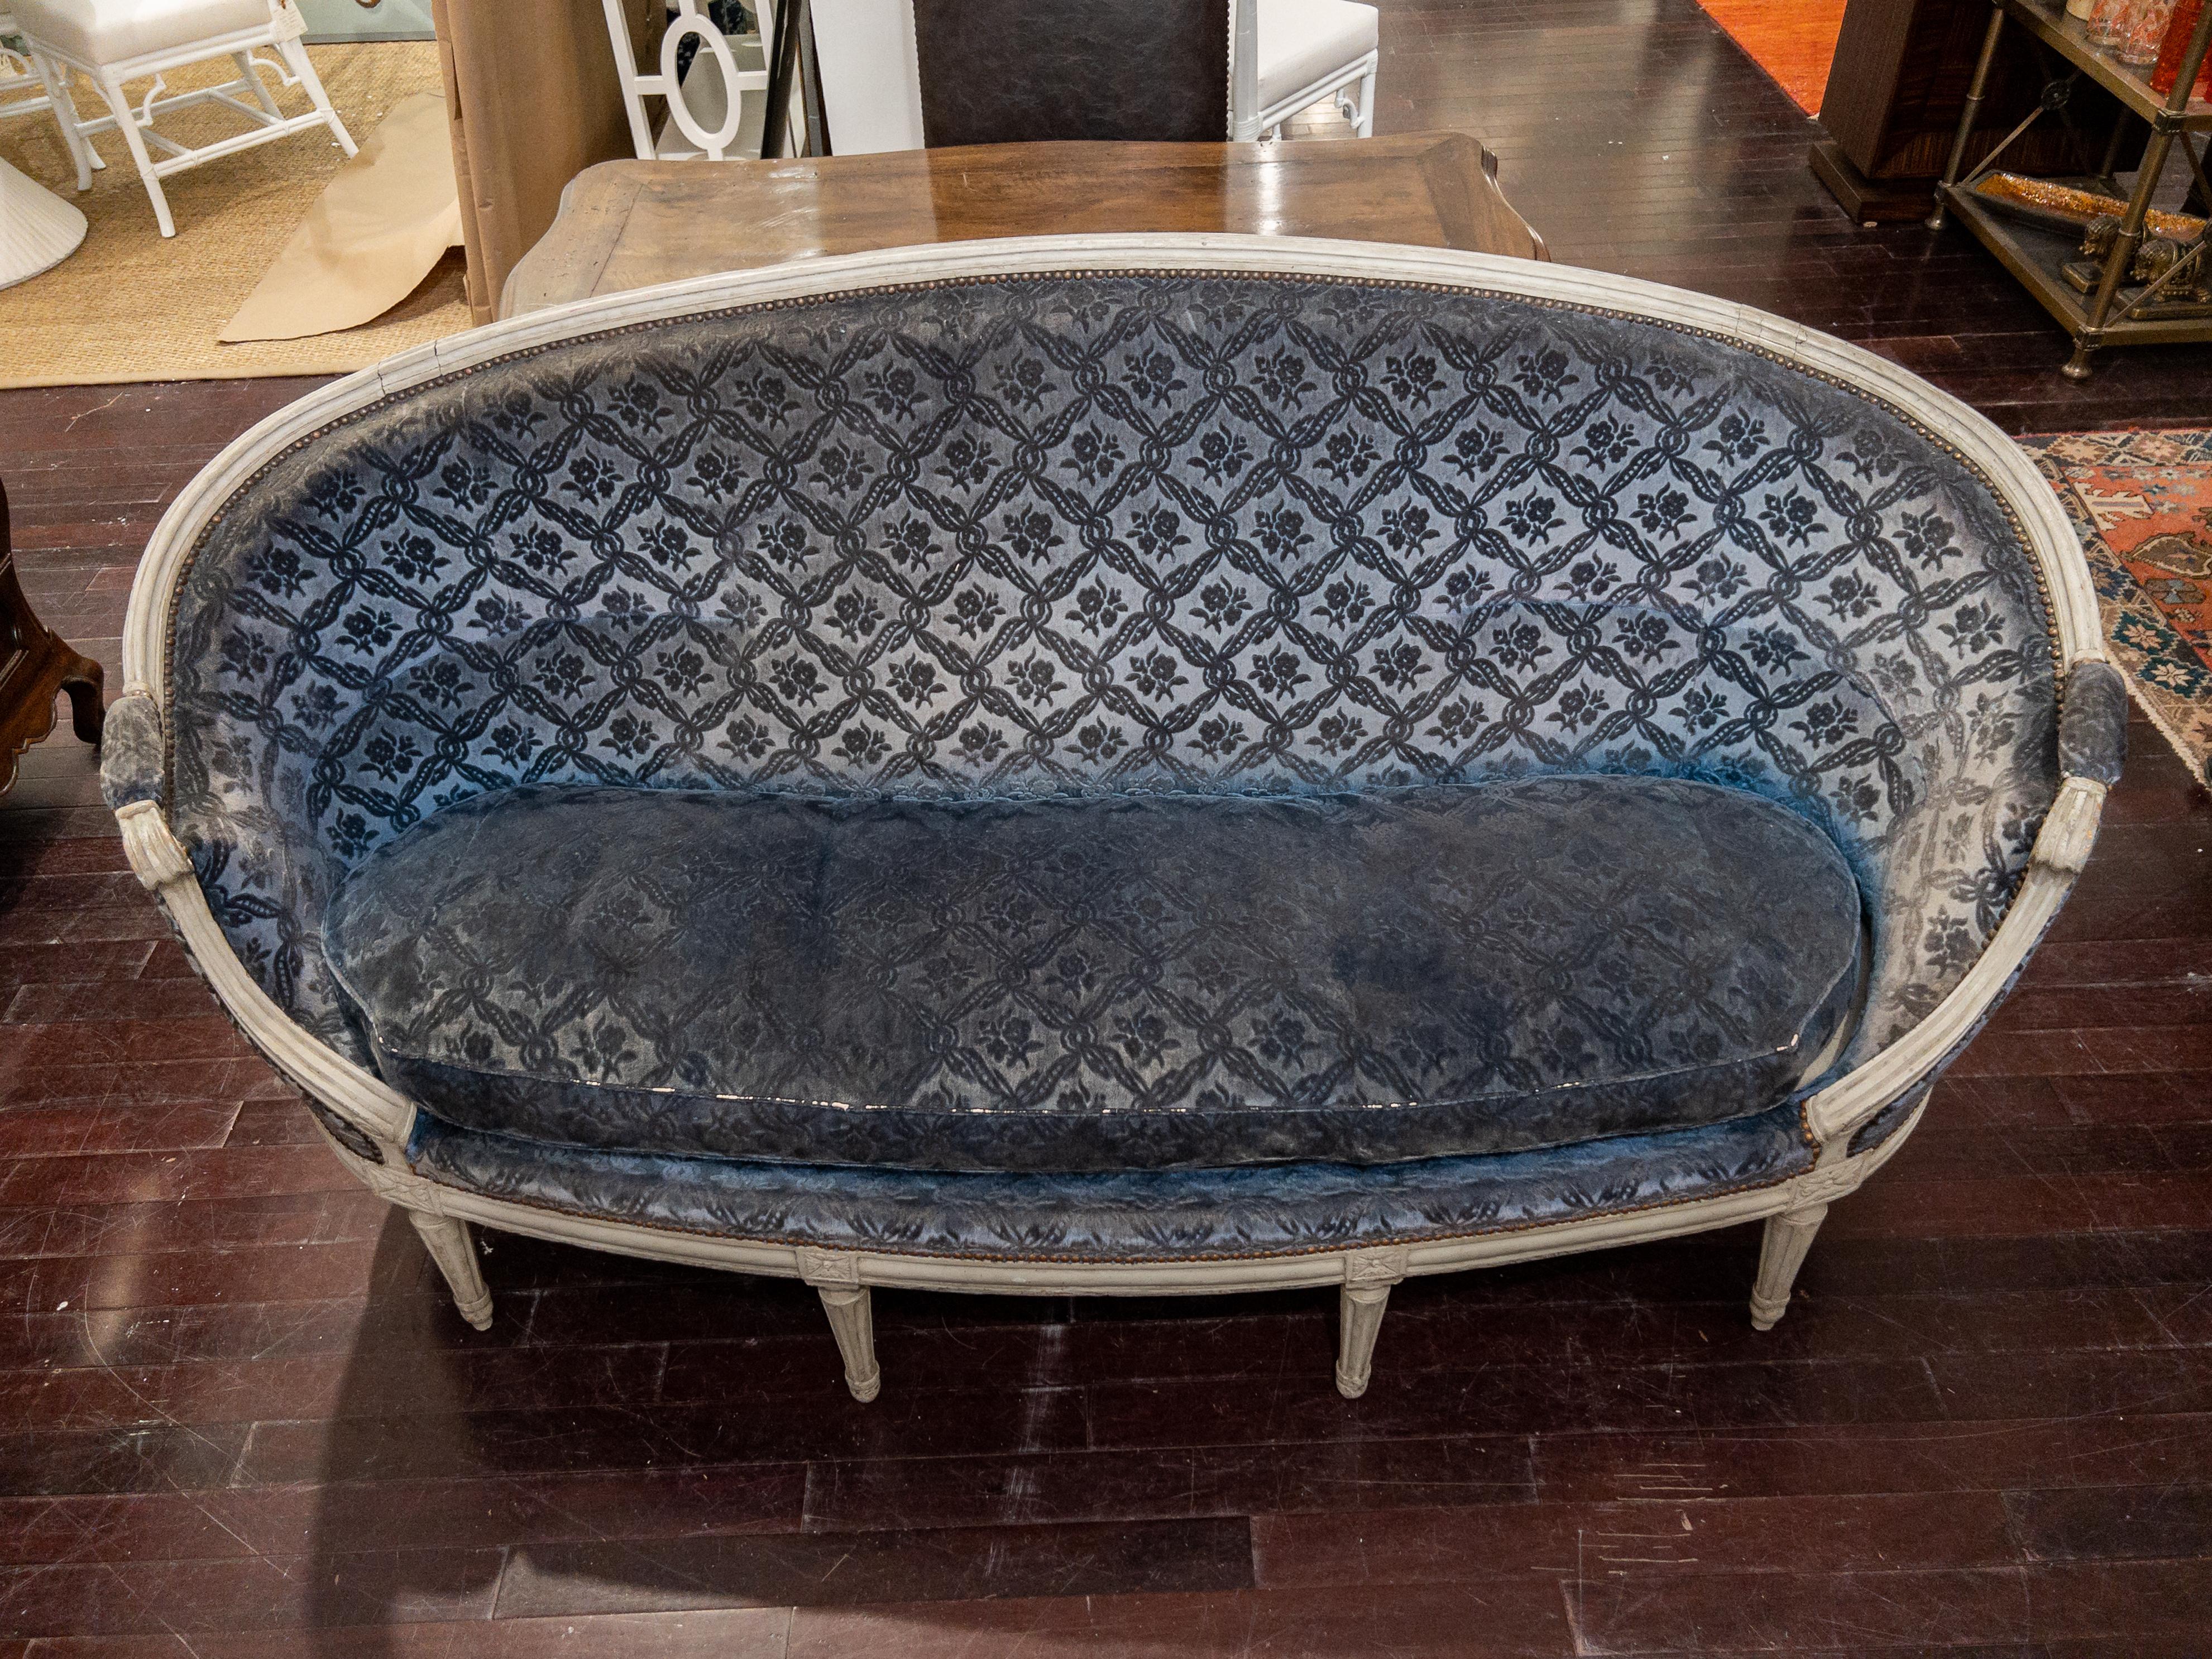 Französisches Sofa des 19. Jahrhunderts, handgeschnitzt und bemalt im Louis-XVI-Stil

Dieses atemberaubende blaue Sofa zeichnet sich durch einen aufwendig handgeschnitzten Rahmen, geschnitzte, geriffelte Beine, eine eiförmige Form und eine